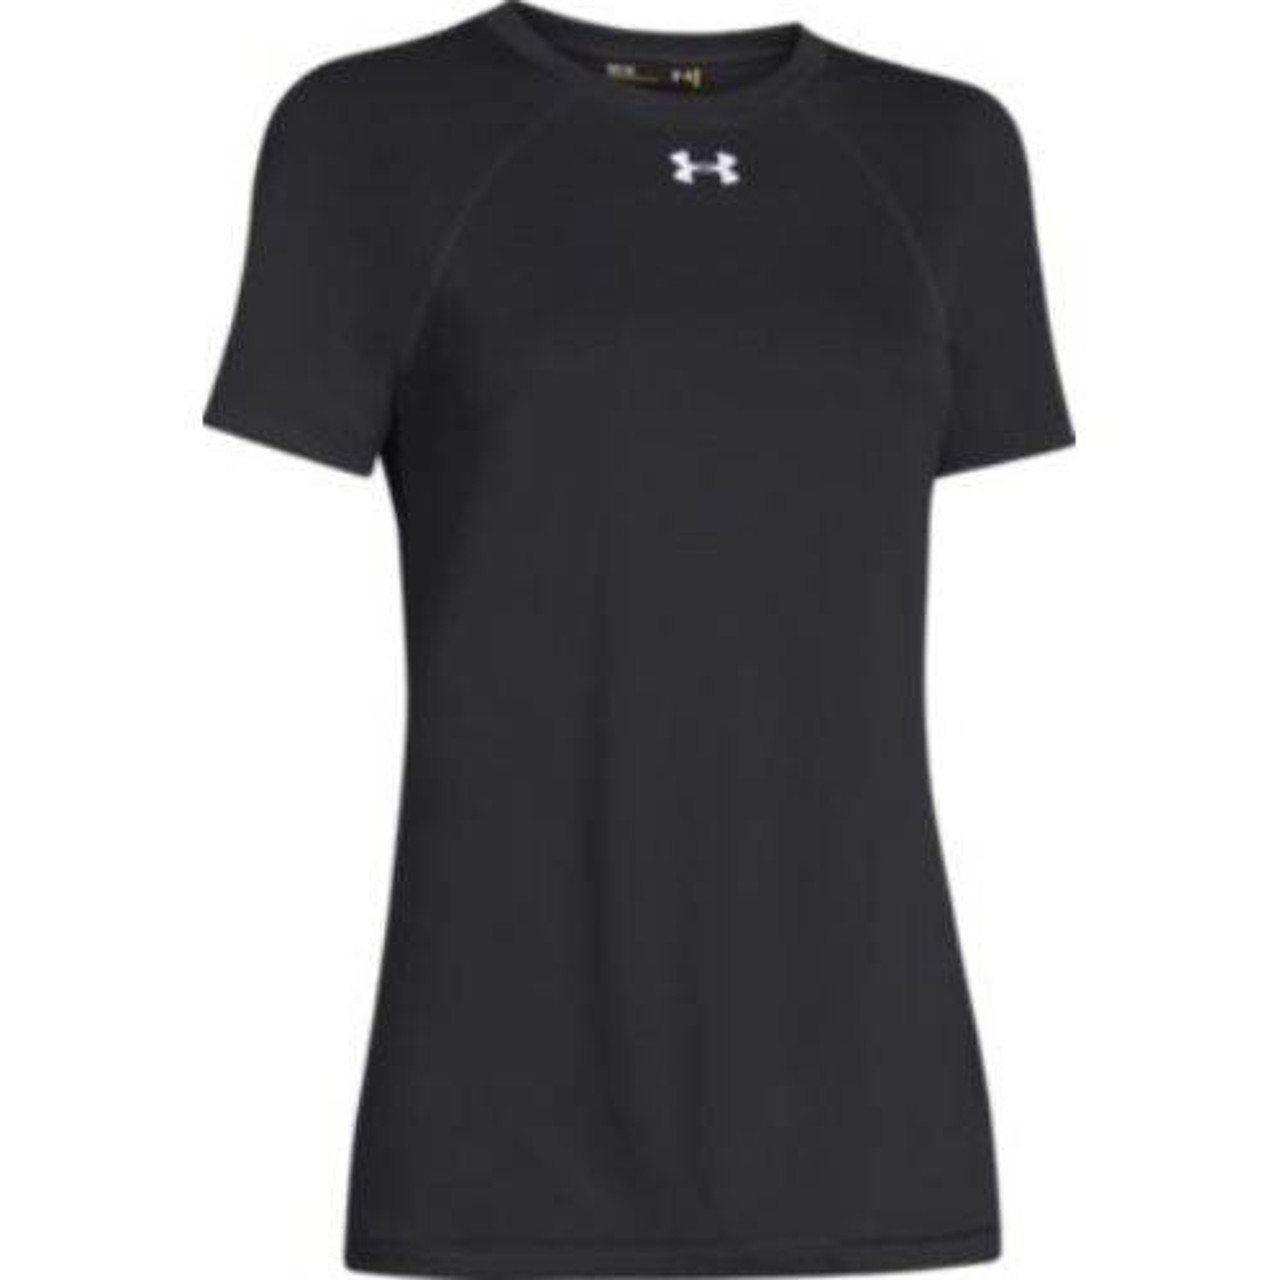 Under Armour Women's Tech Workout T Shirt